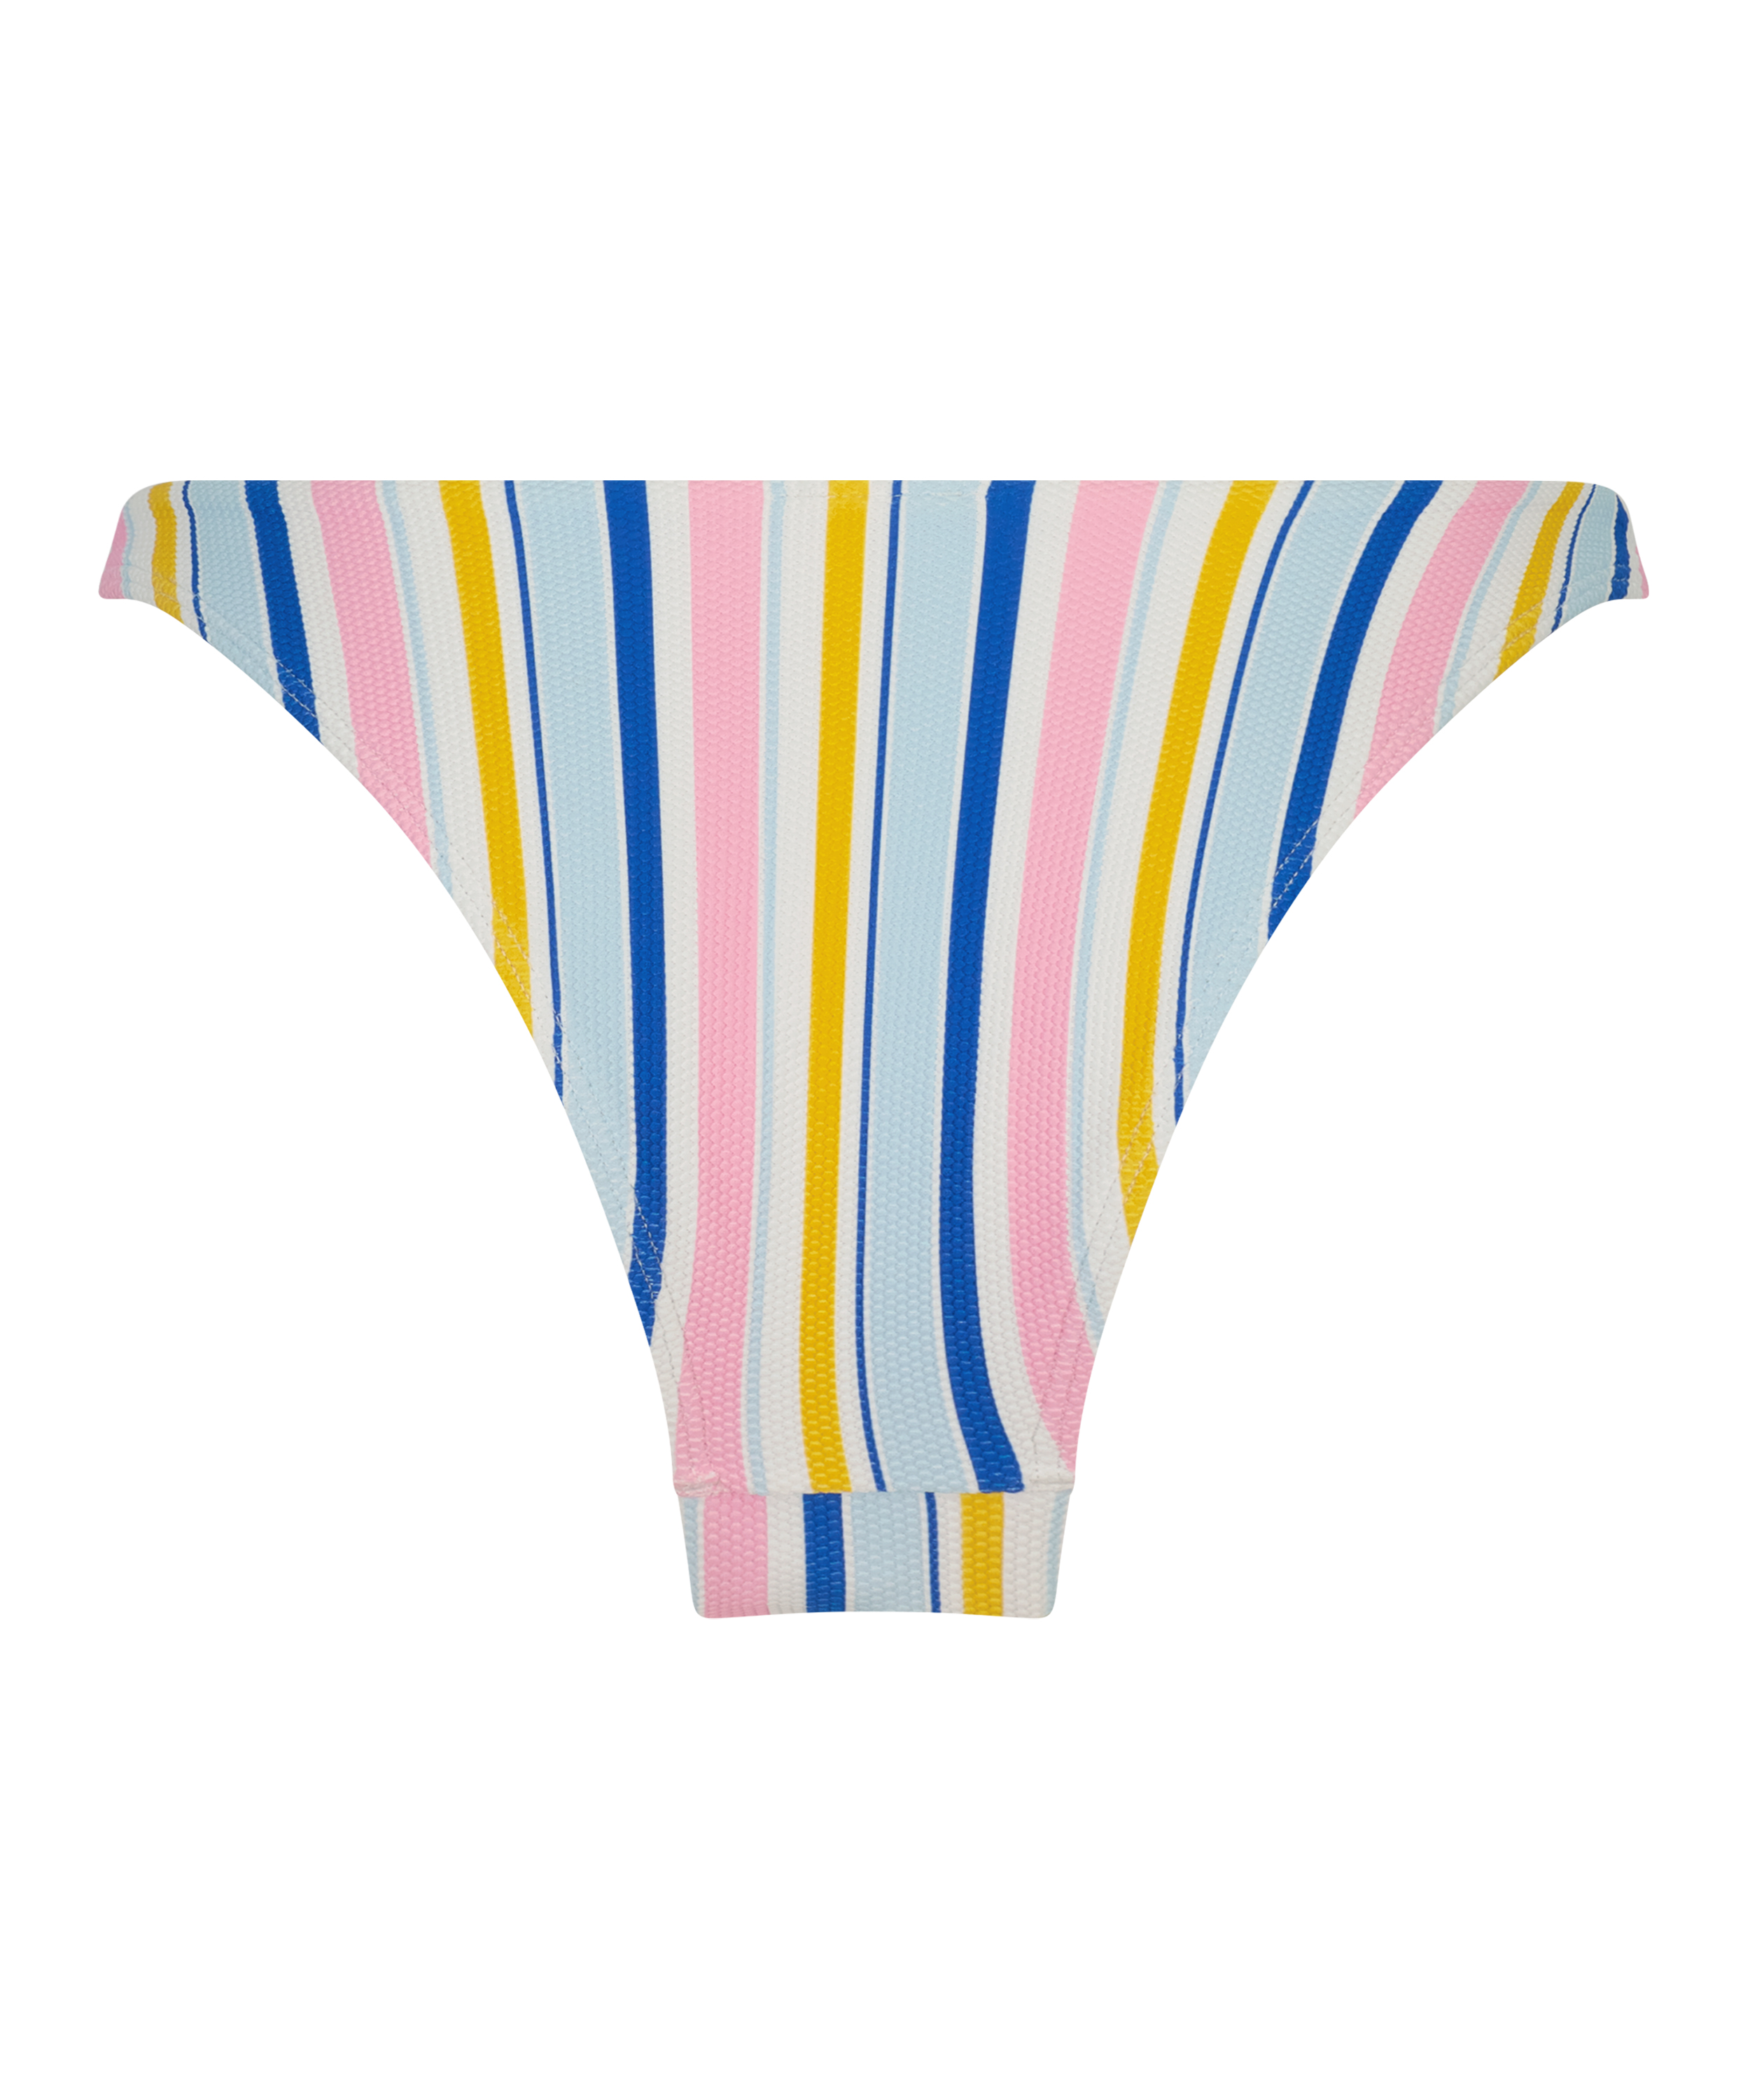 Tahiti high-cut bikini bottoms for €18.99 - All Swimwear - Hunkemöller